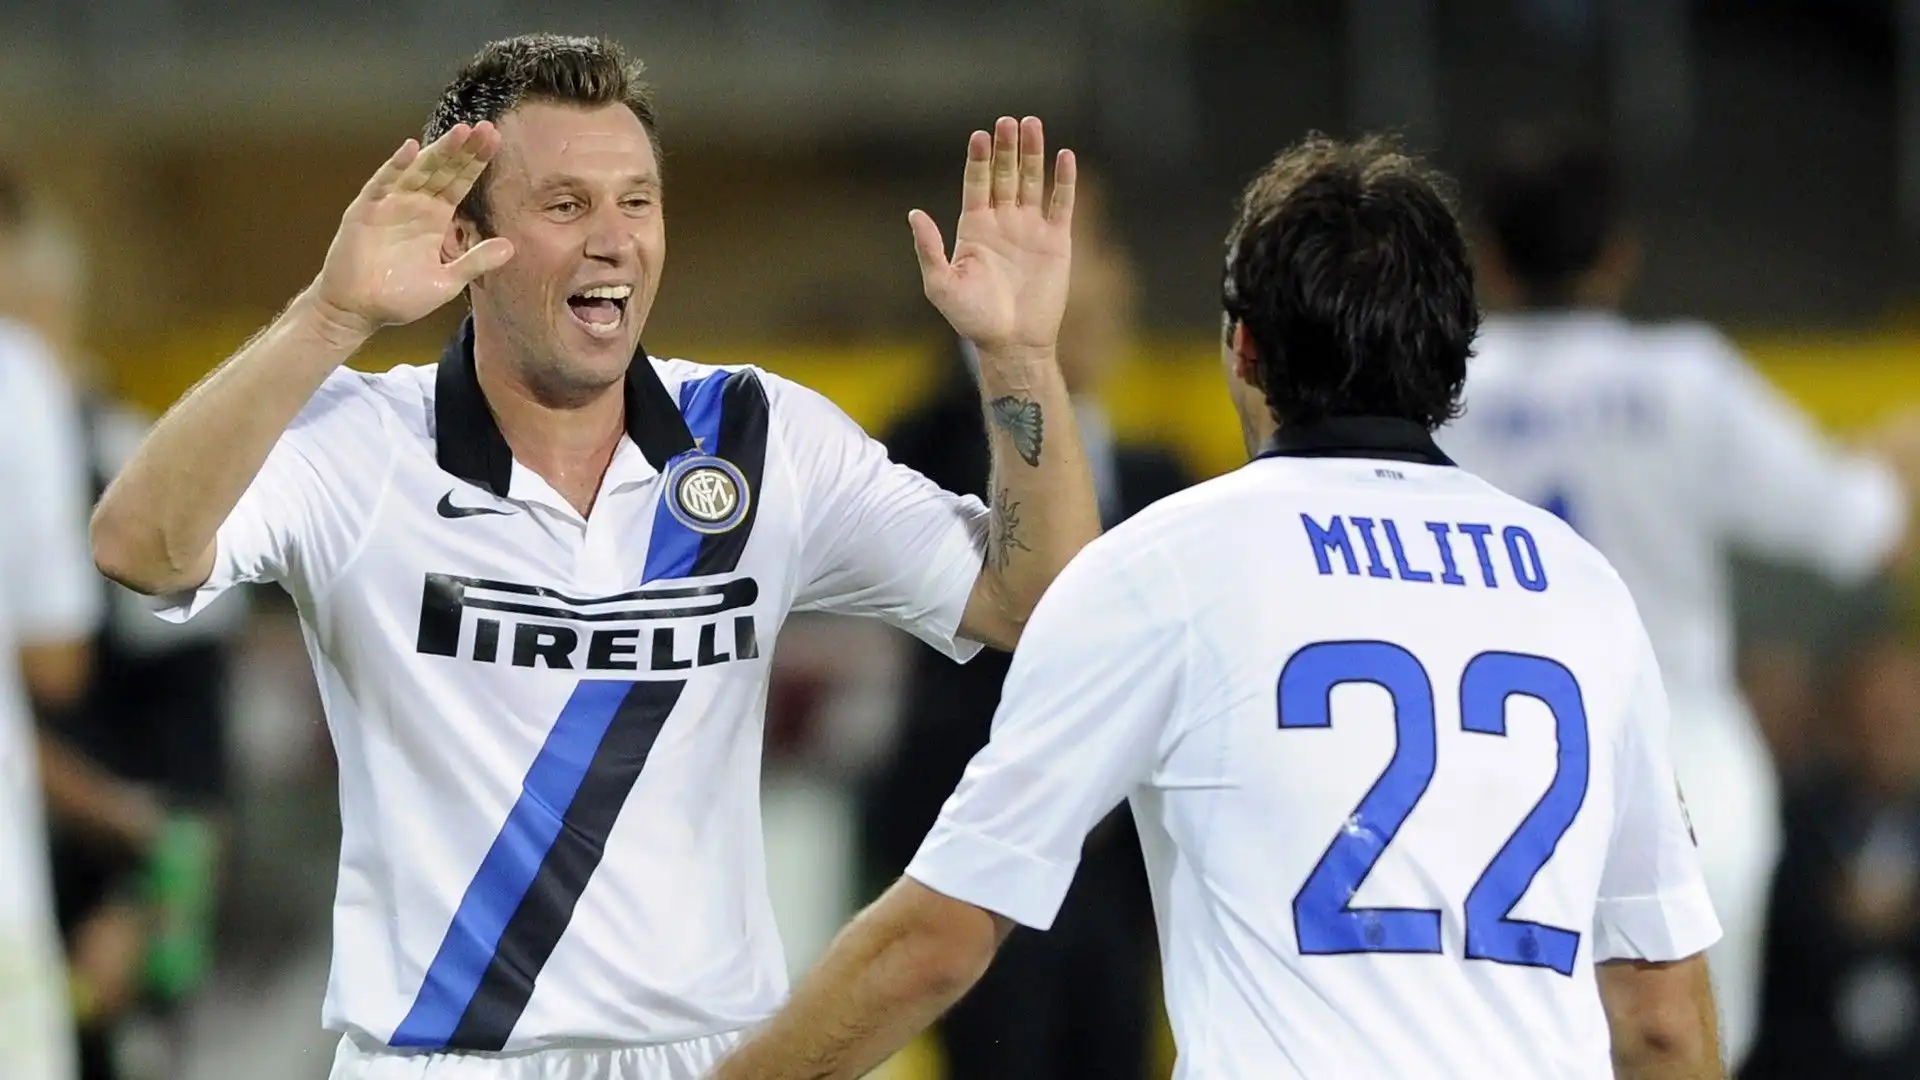 Cassano è approdato all'Inter nel 2012 dopo l'esperienza al Milan. E' rimasto in nerazzurro fino a luglio 2013